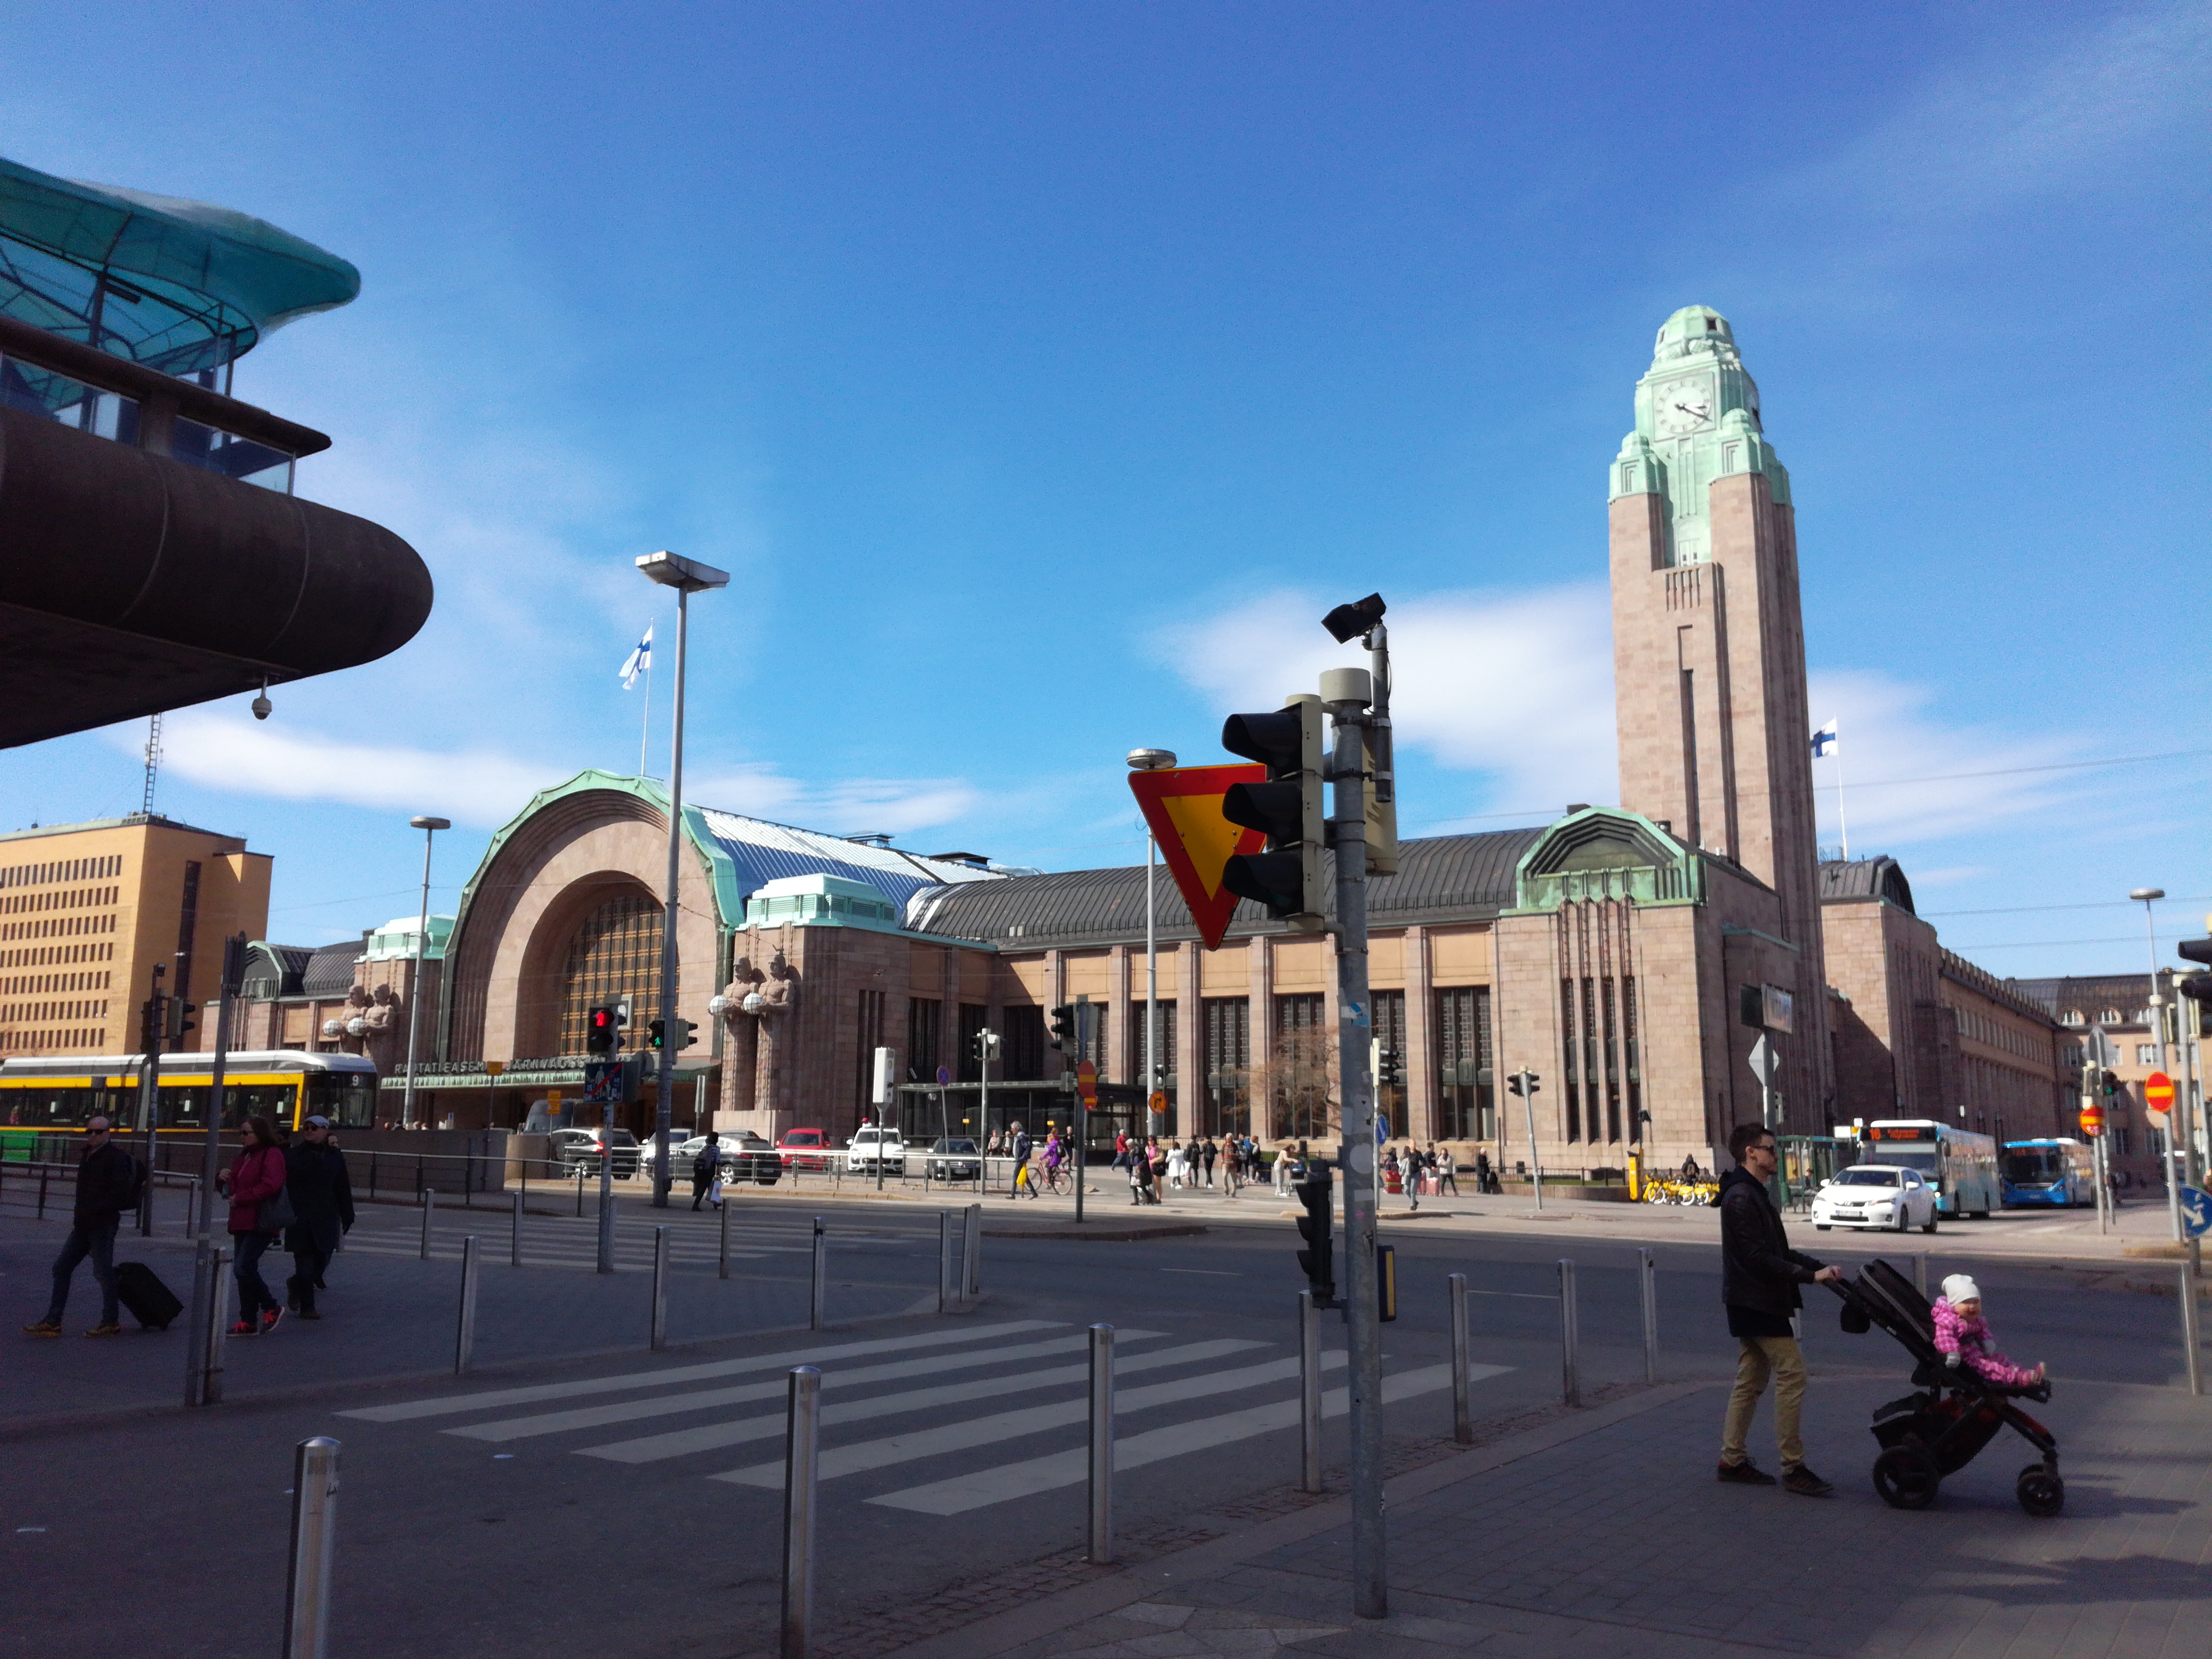 Helsingin rautatieasema Kaivokadun ja Hakasalmenkadun (Keskuskatu) kulmasta nähtynä rephoto